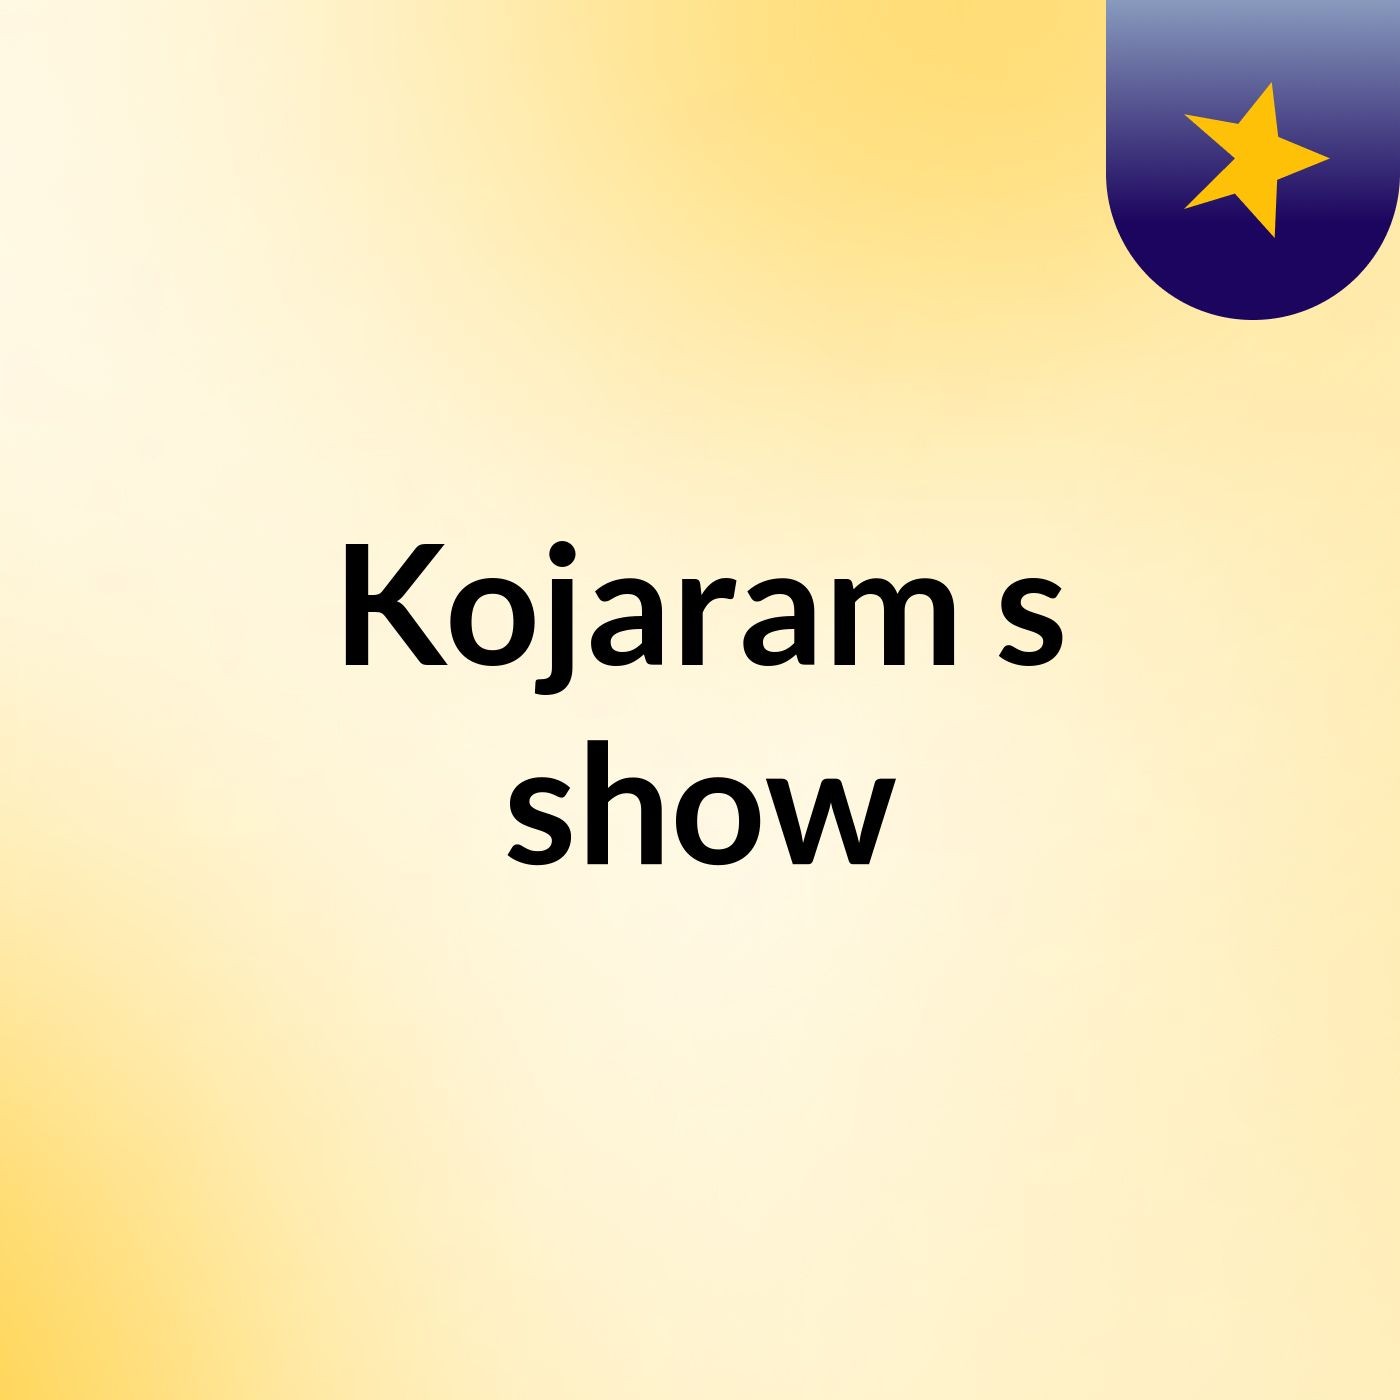 Kojaram's show